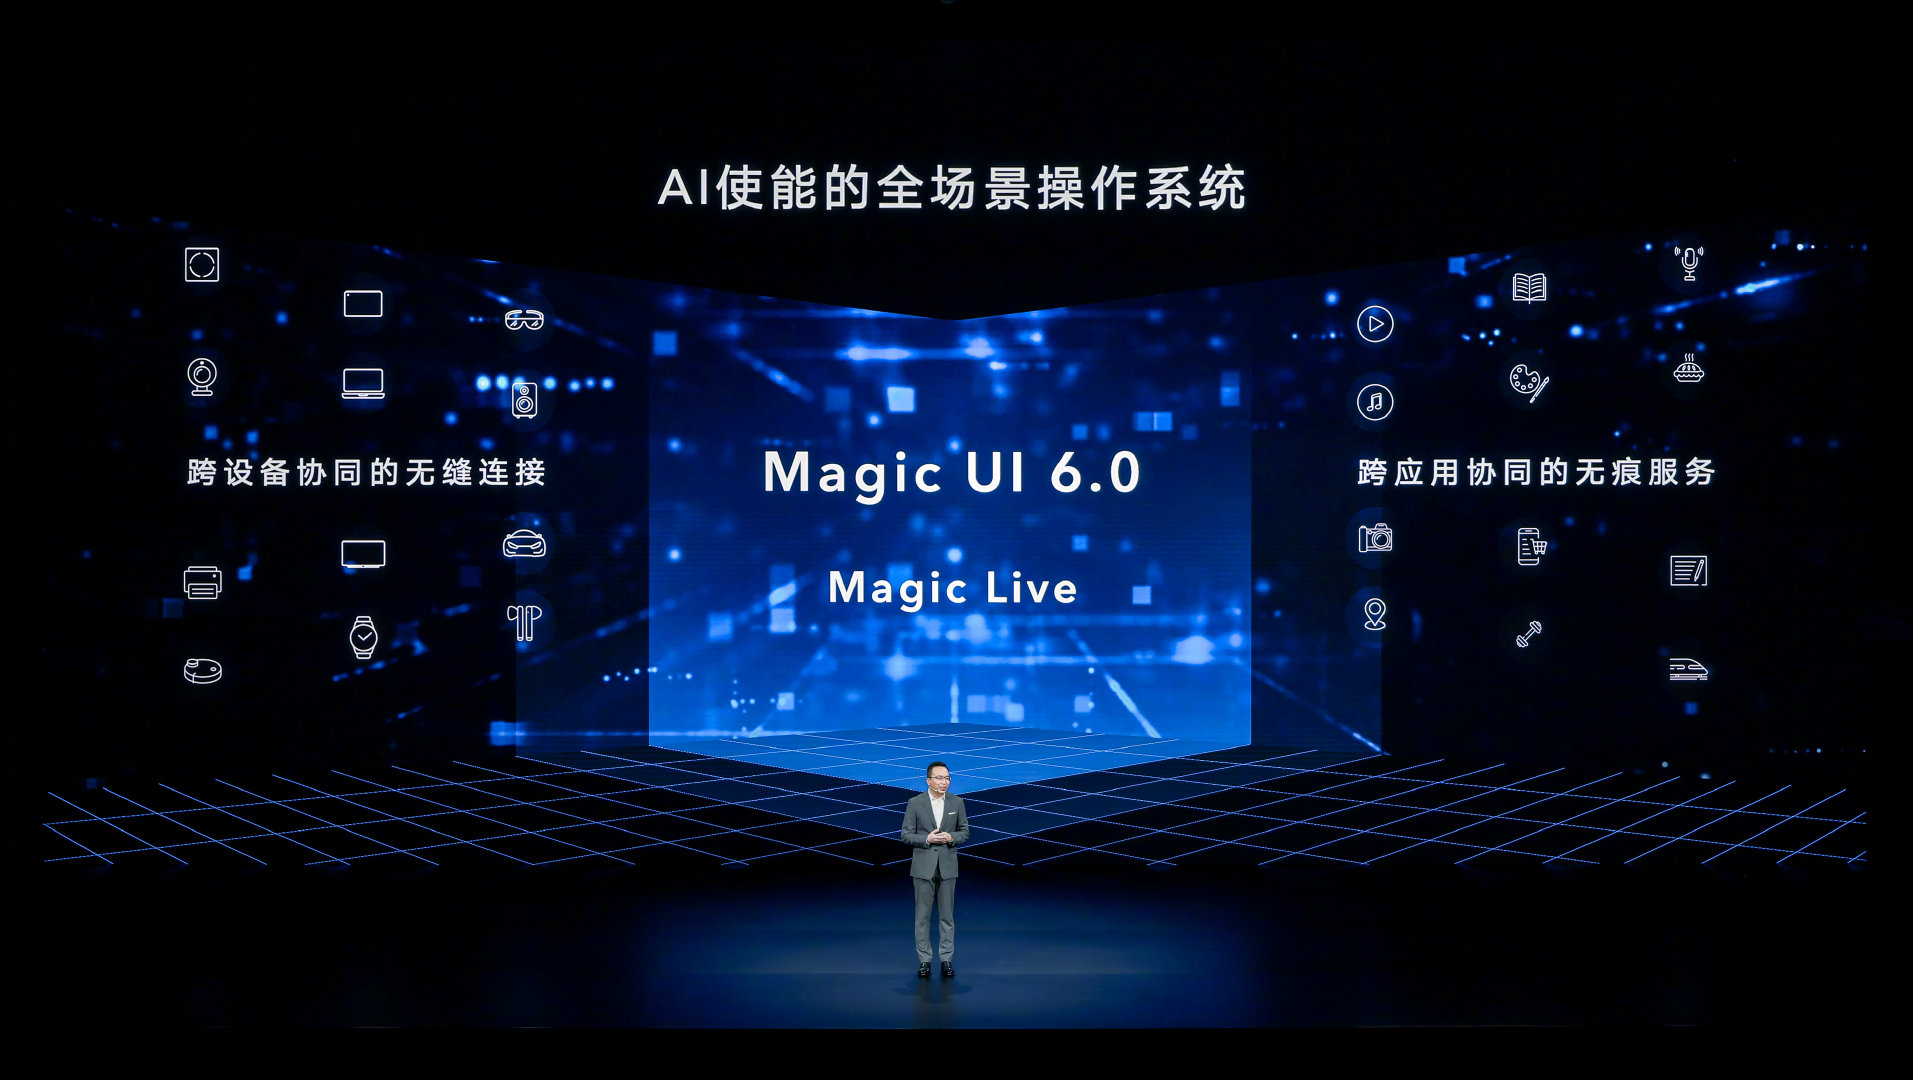 MAGIC UI 6.0